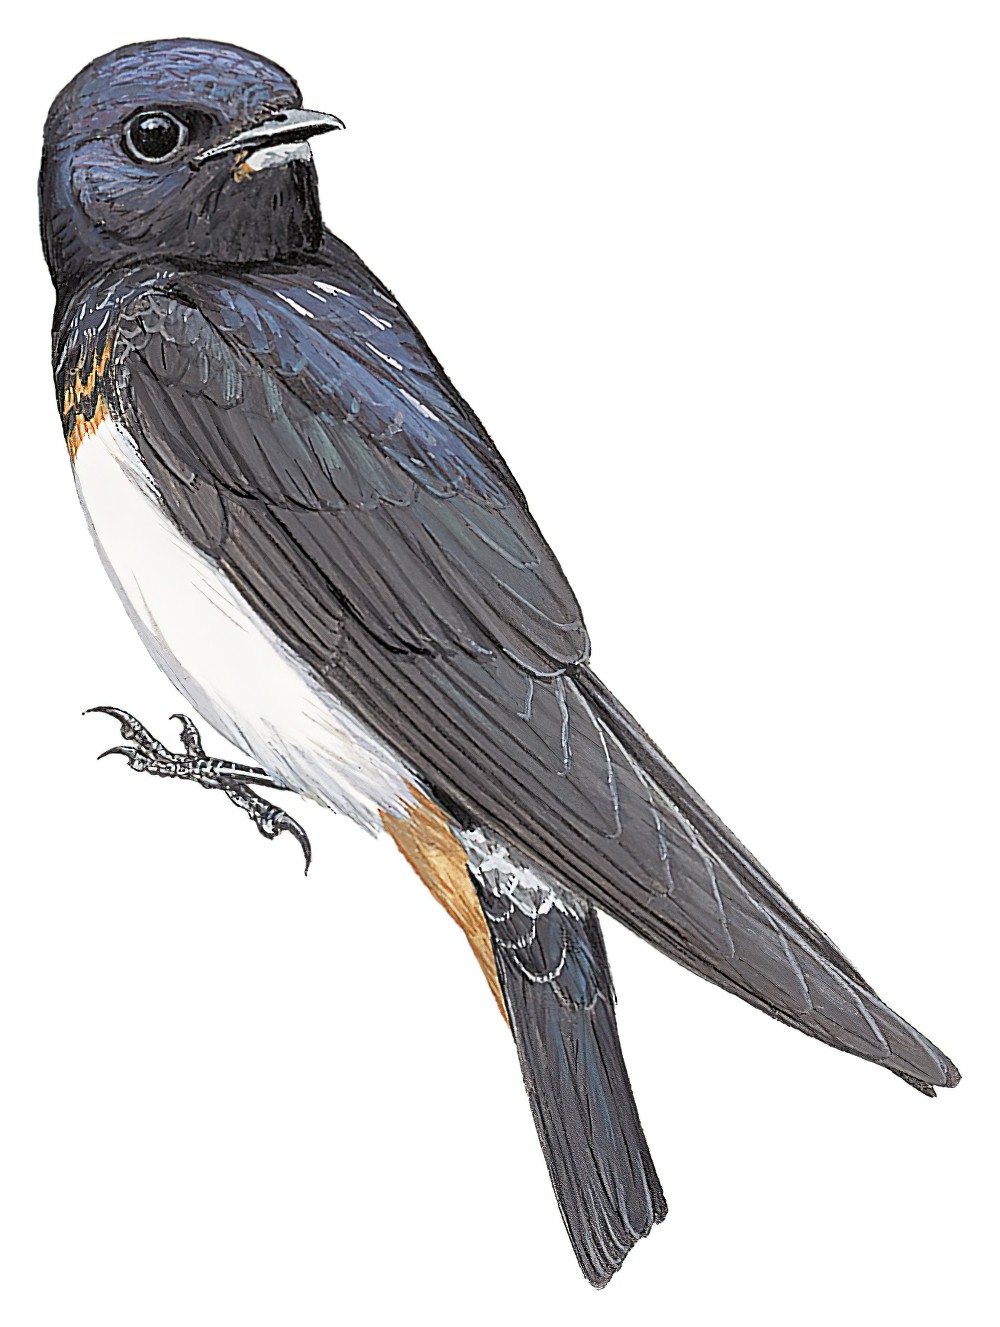 Red Sea Swallow / Petrochelidon perdita